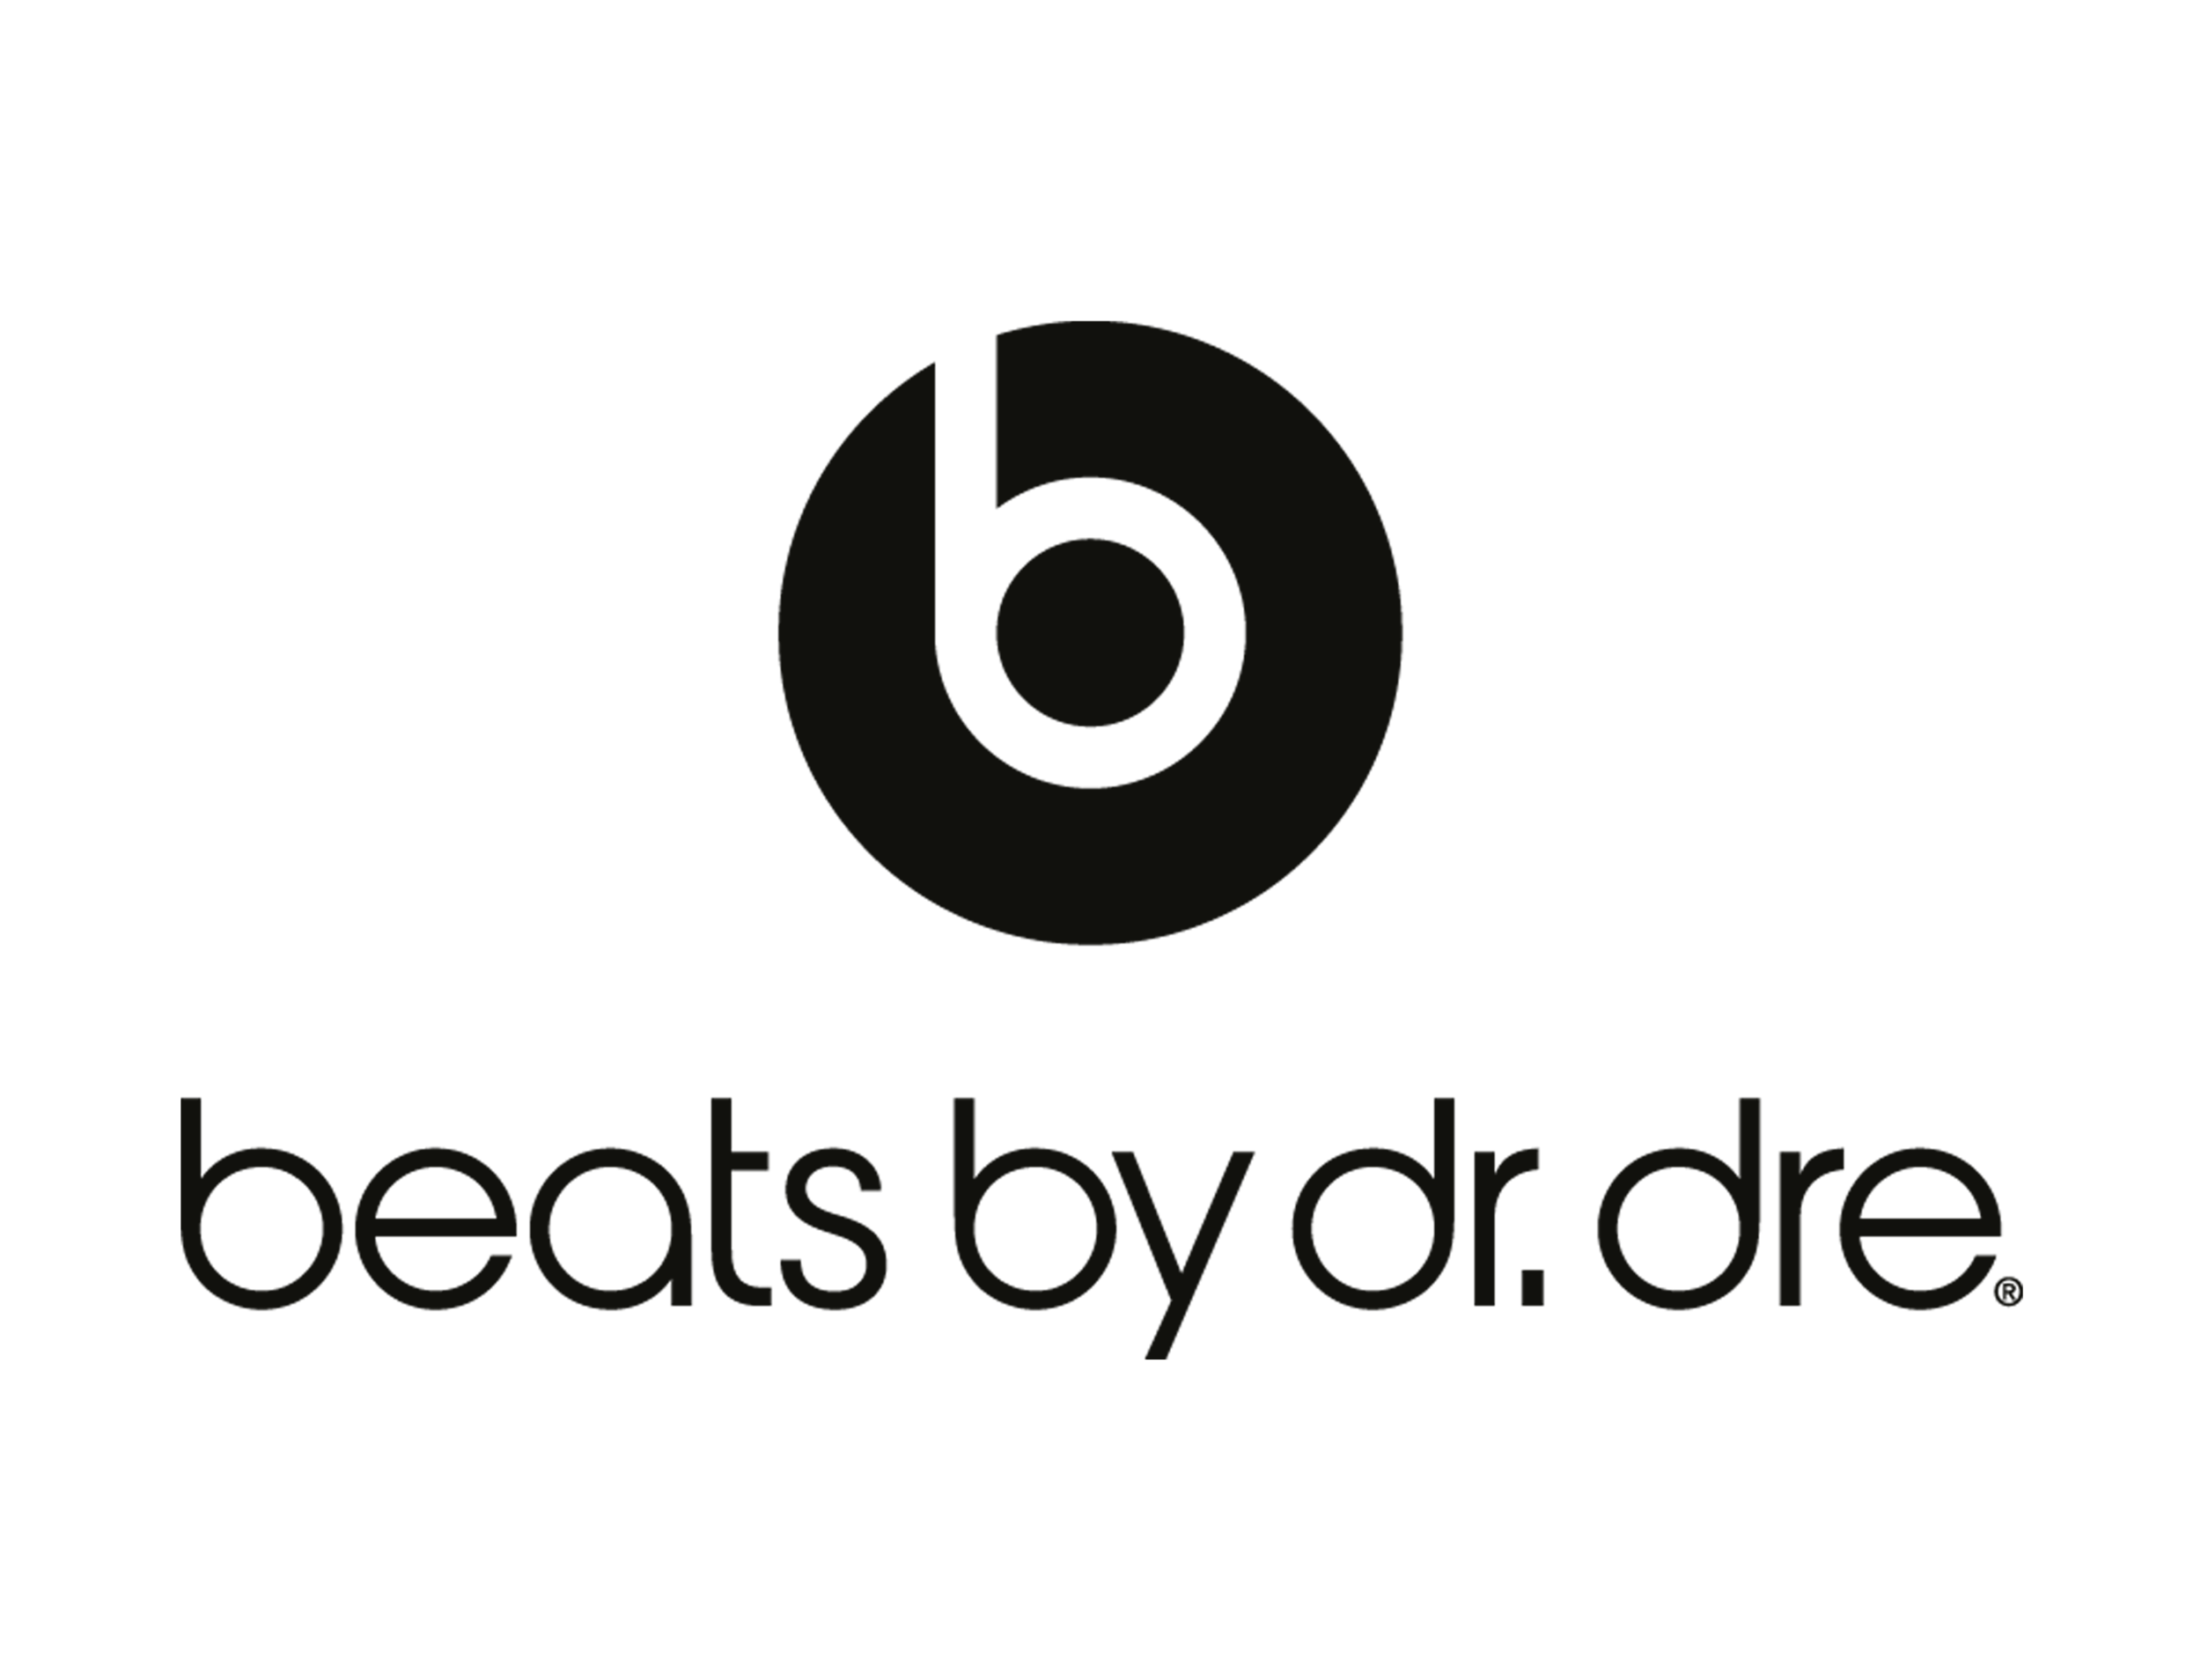 beats.png